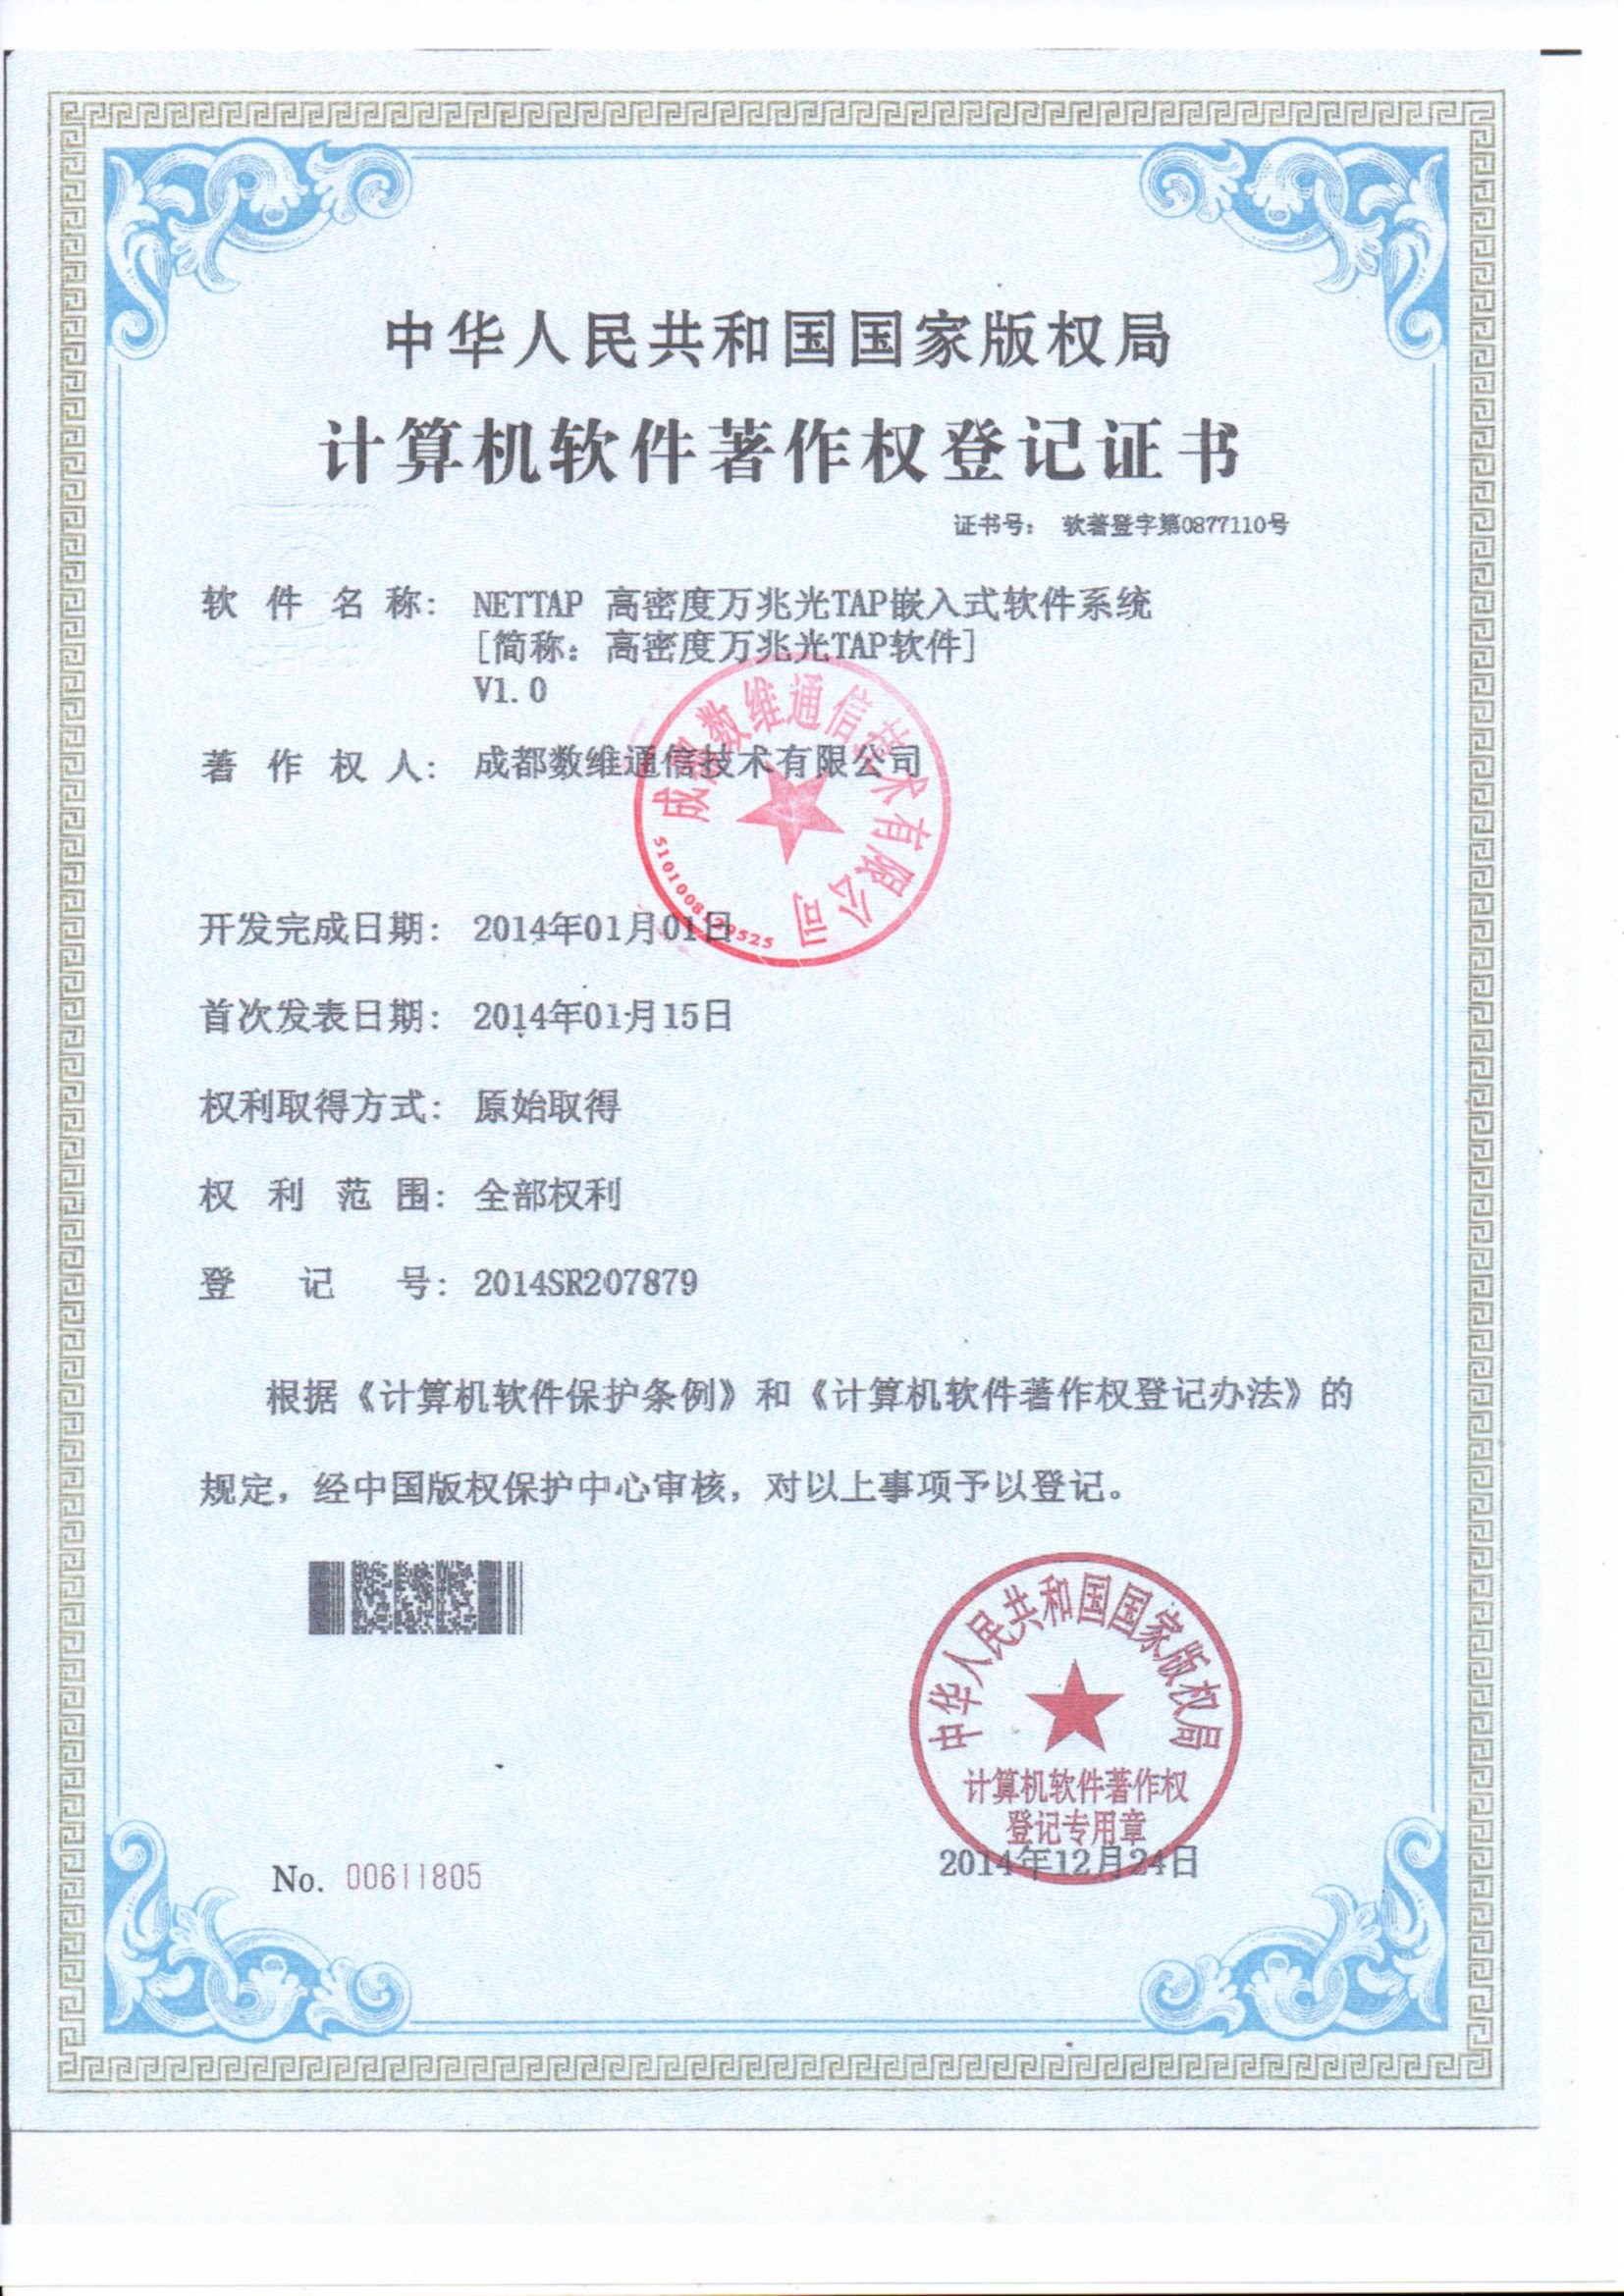 La Chine Chengdu Shuwei Communication Technology Co., Ltd. Certifications